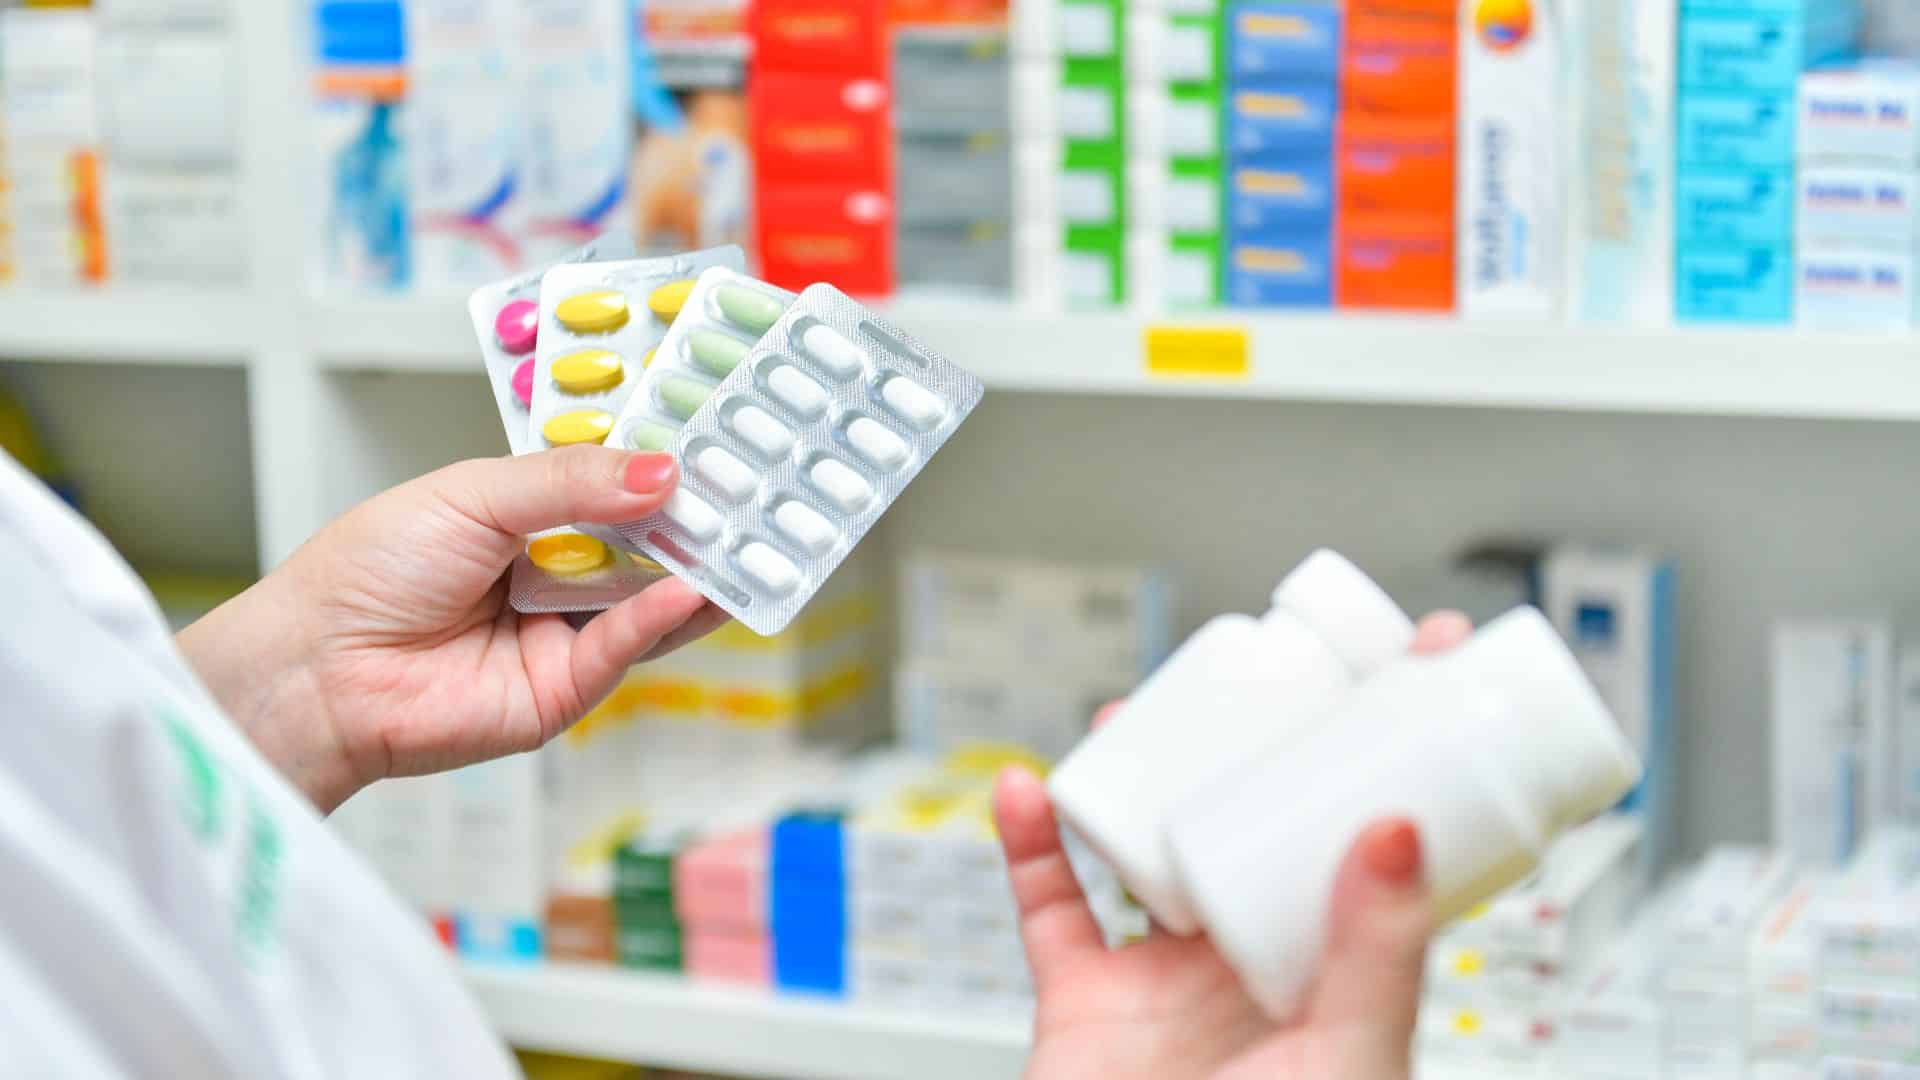 cartelas de remédio em uma farmácia